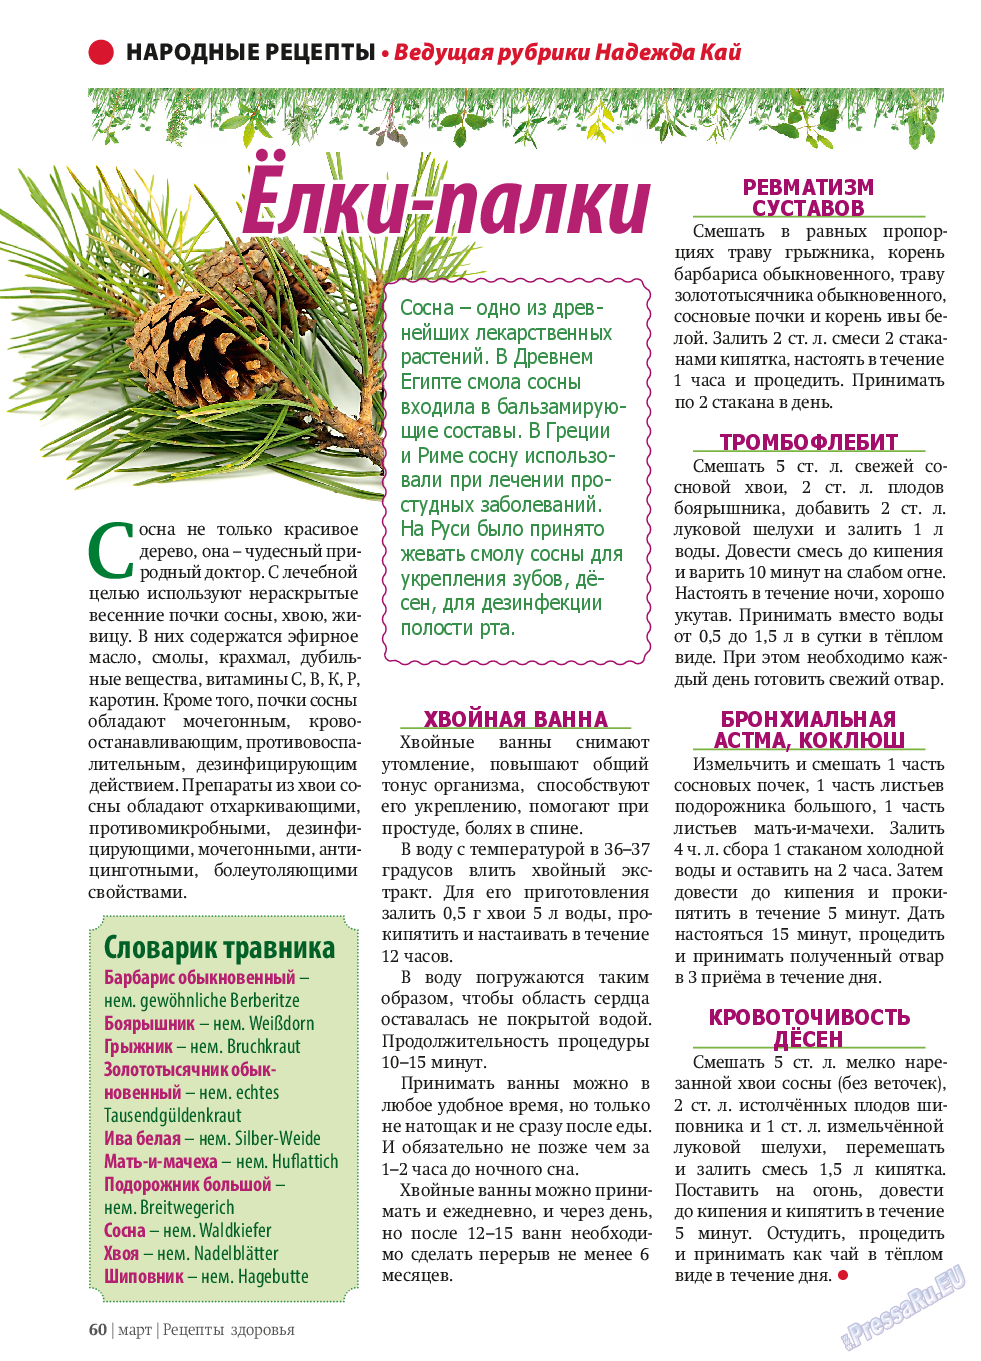 Рецепты здоровья, журнал. 2014 №58 стр.60